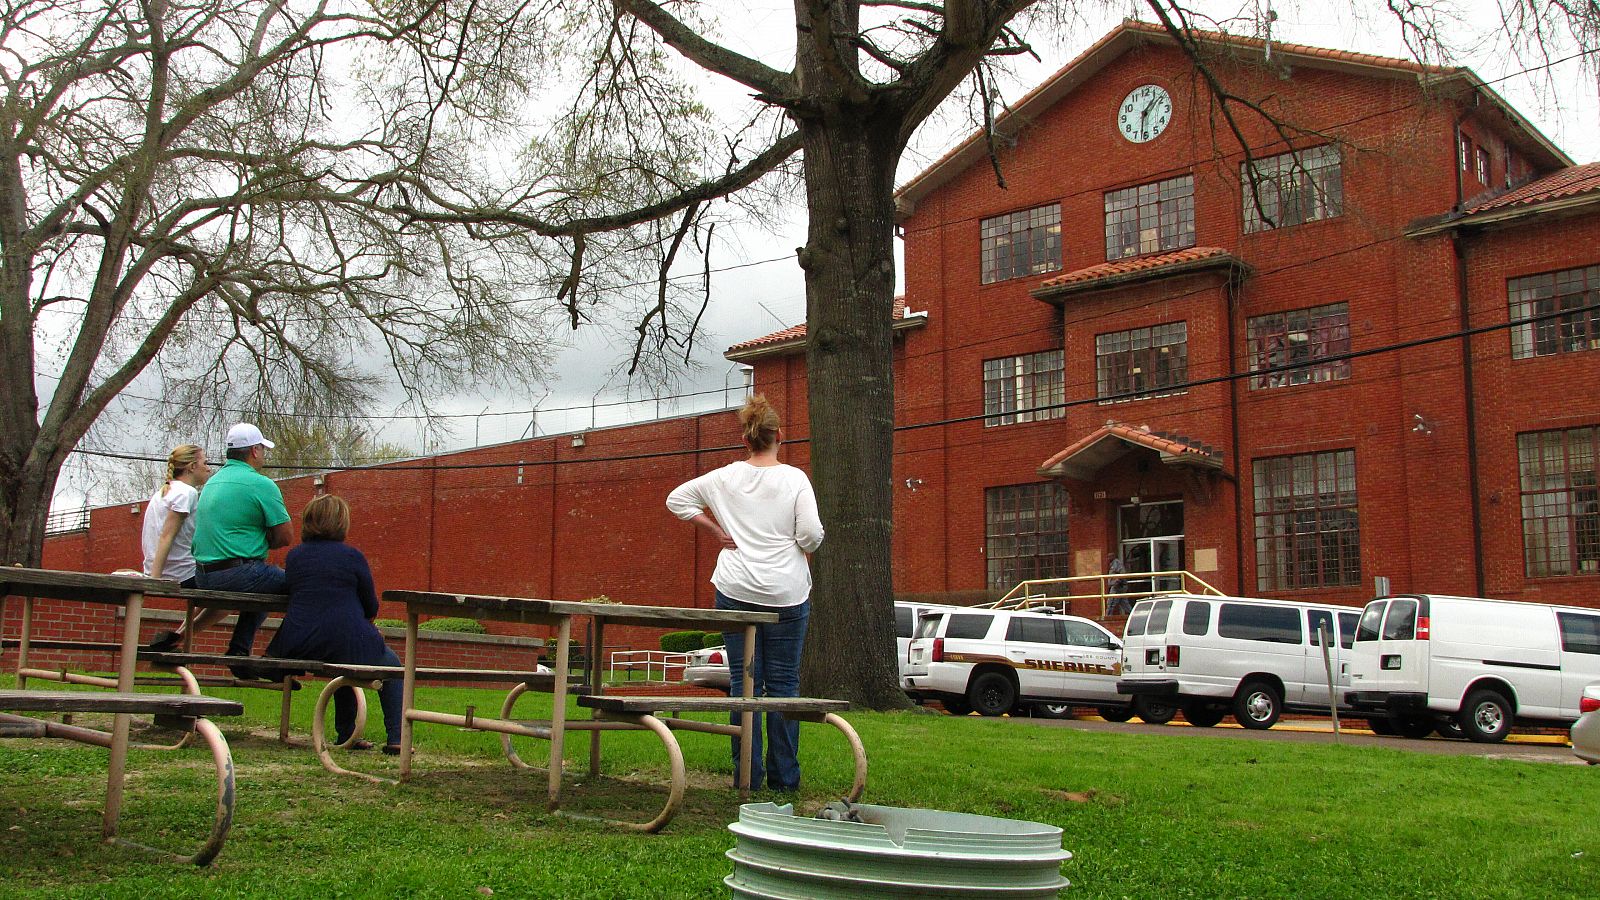 Familiares esperan la salida de presos en Huntsville